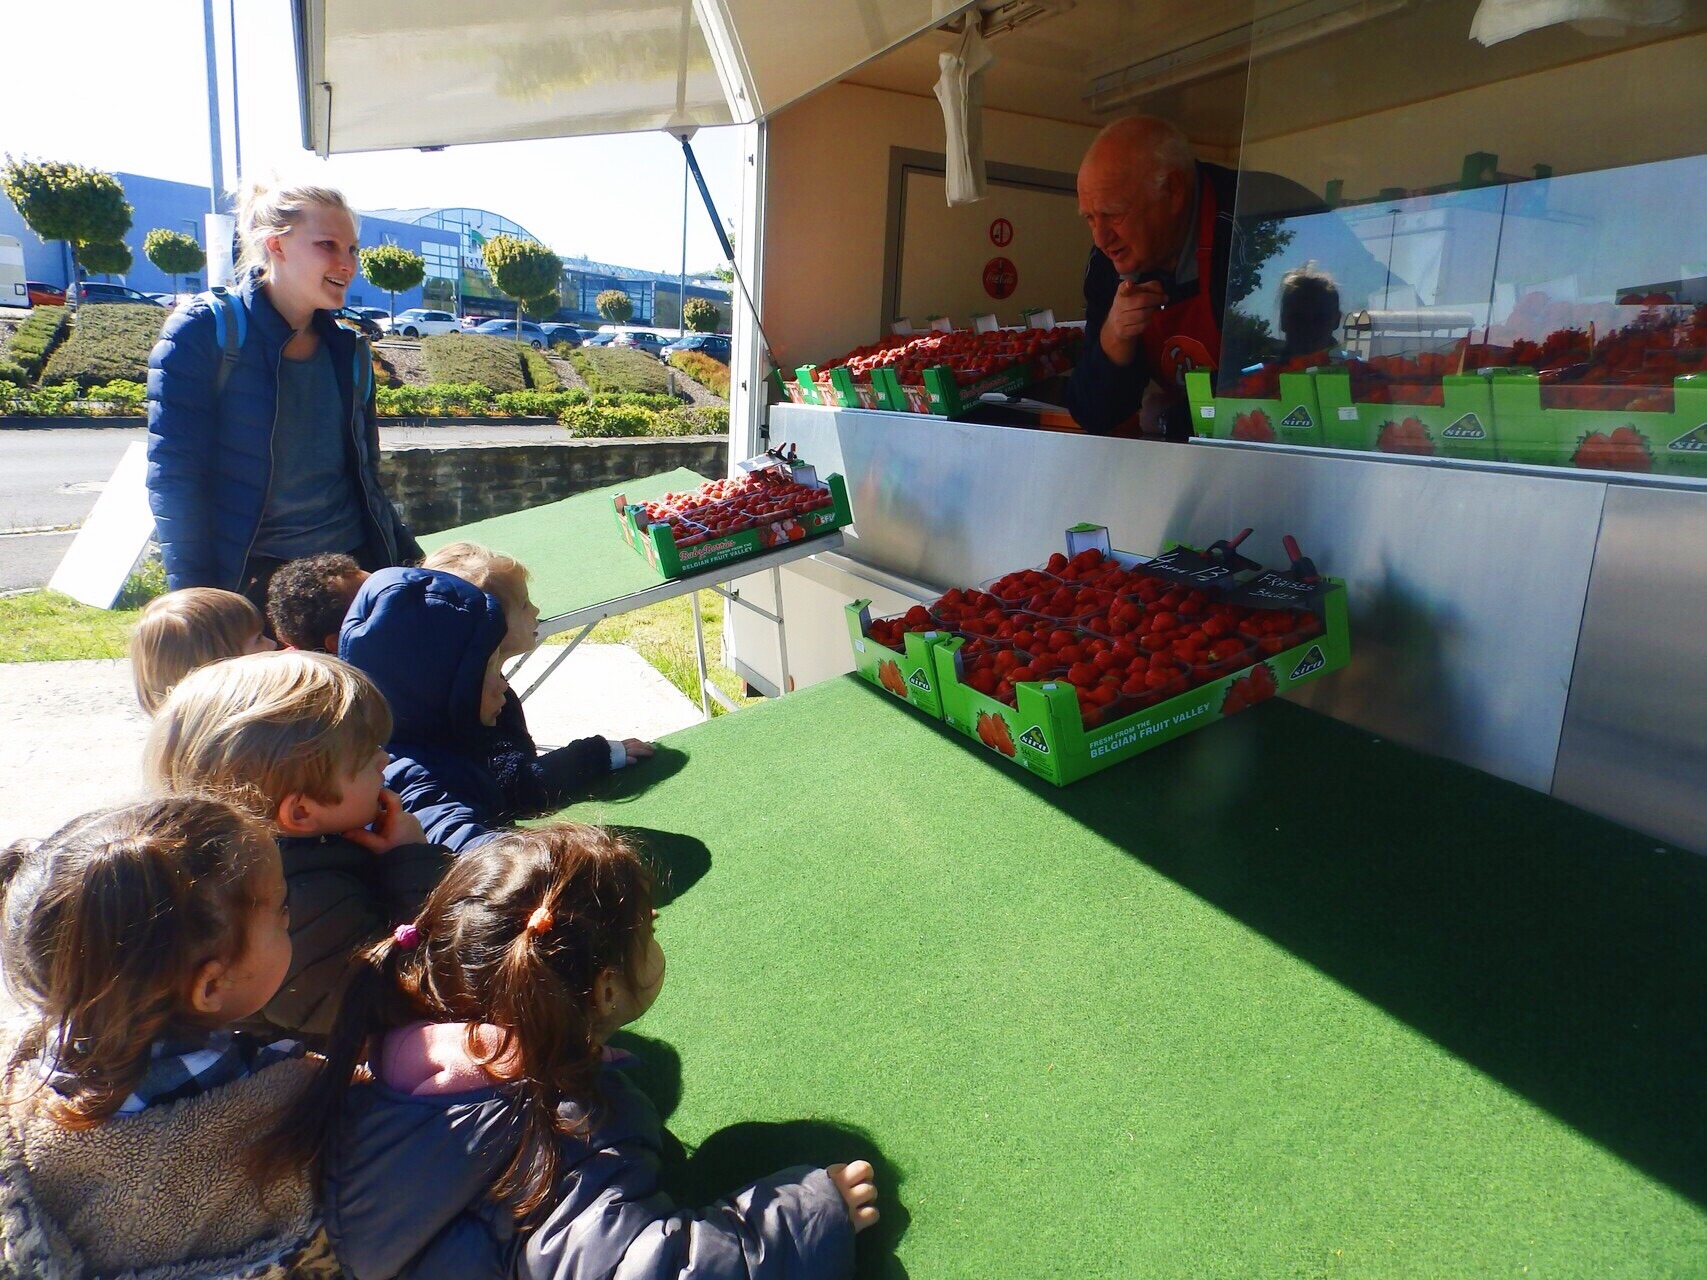 Une animatrice se tient à côté d'un groupe d'enfants devant un stand de marché qui ne vend que des fraises. Le vendeur regarde les enfants comme s'il leur expliquait quelque chose. Pour nous, il est important que les enfants sachent dès leur plus jeune âge ce que signifie une alimentation saine.